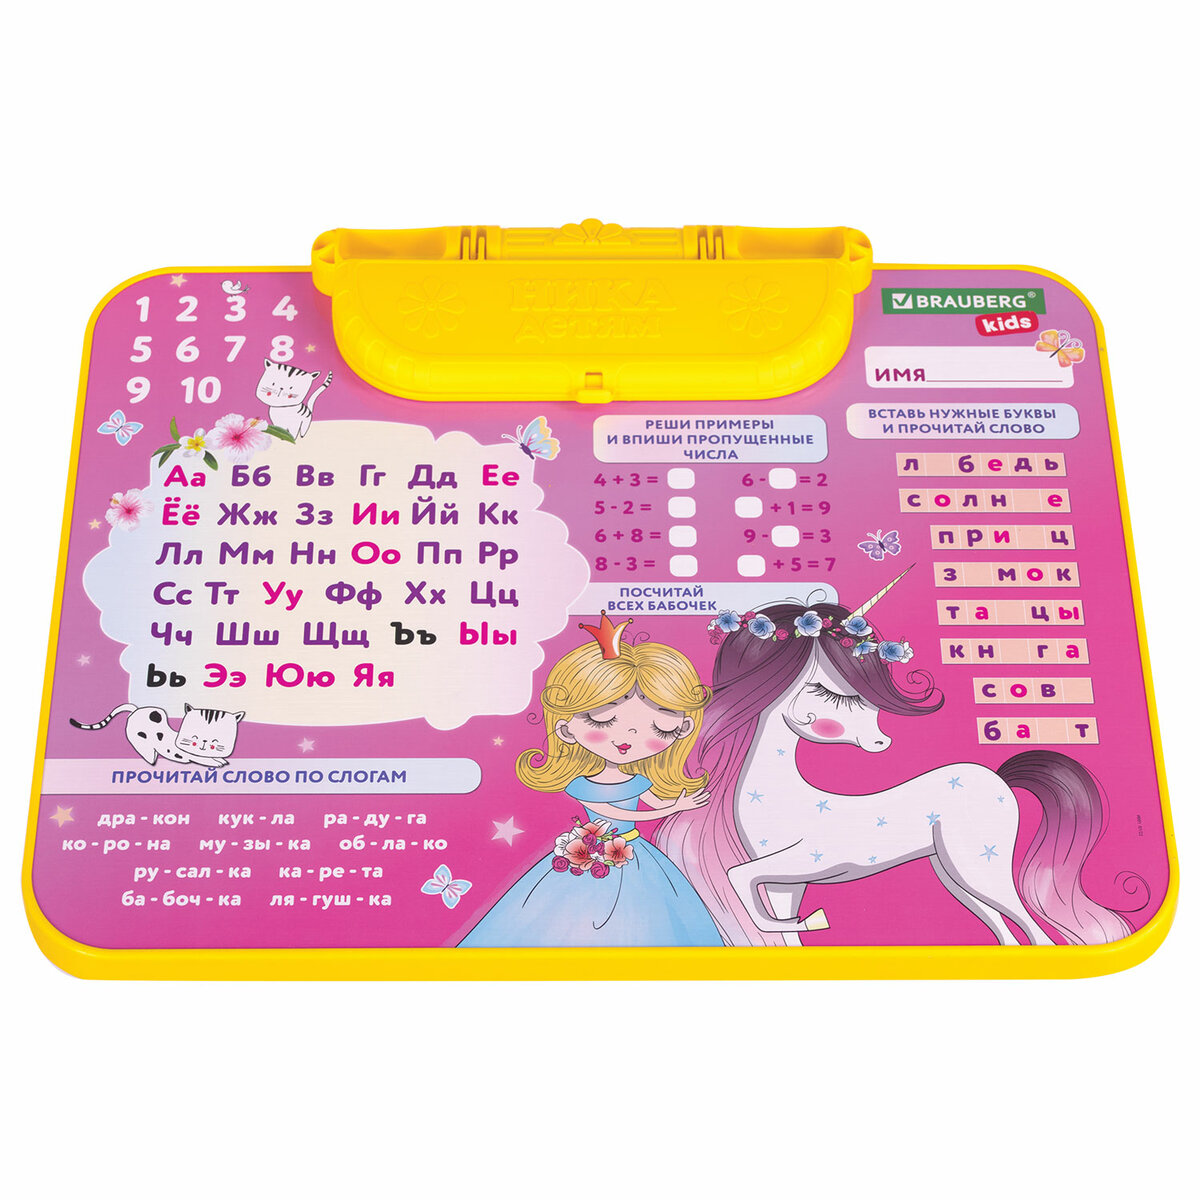 Столик и стульчик детский Brauberg игровой набор для развивающих игр для девочки розовый Принцесса - фото 11